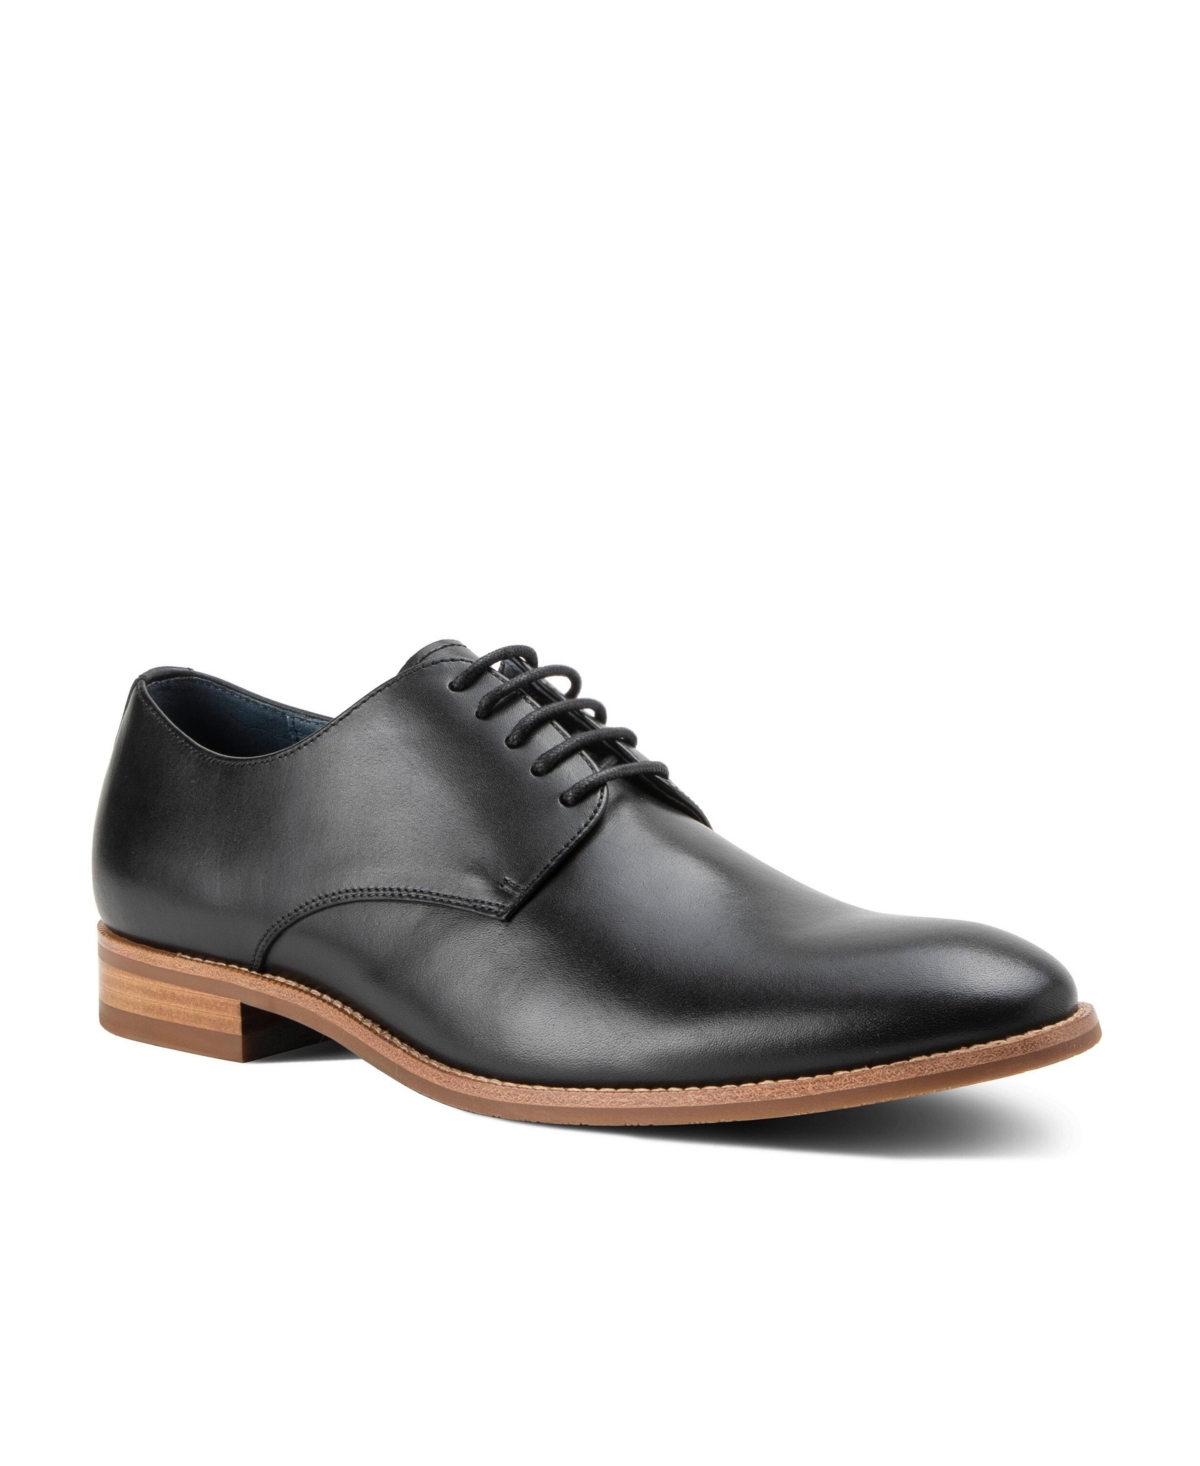 Men's Damon Dress Casual Lace-Up Plain Toe Derby Leather Shoes - Black